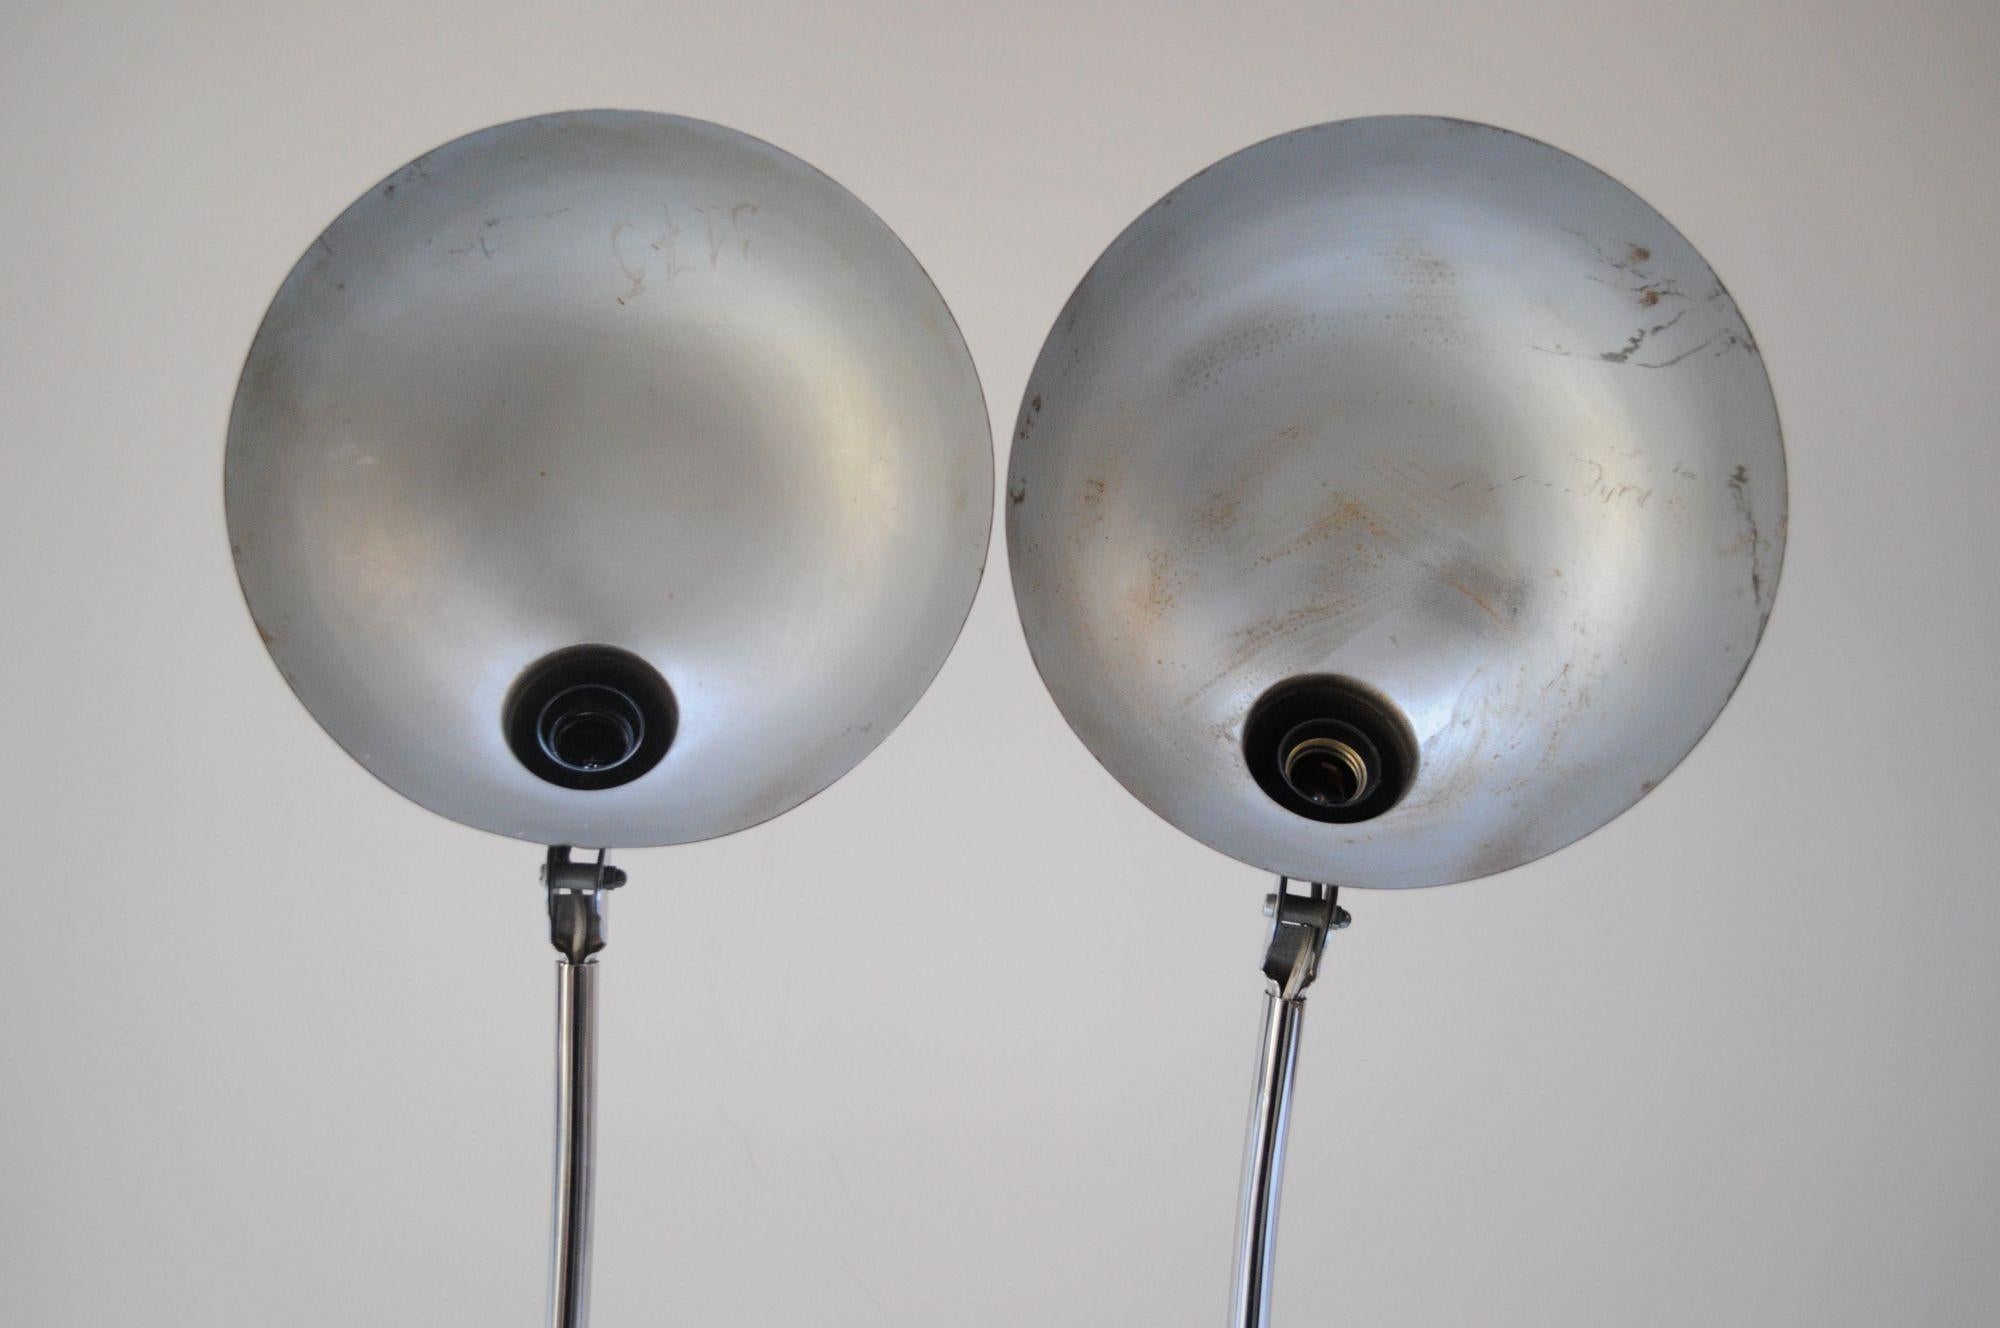 Pair of Vintage Italian Modern Industrial Chromed-Metal Task Lamps by Seminara For Sale 11